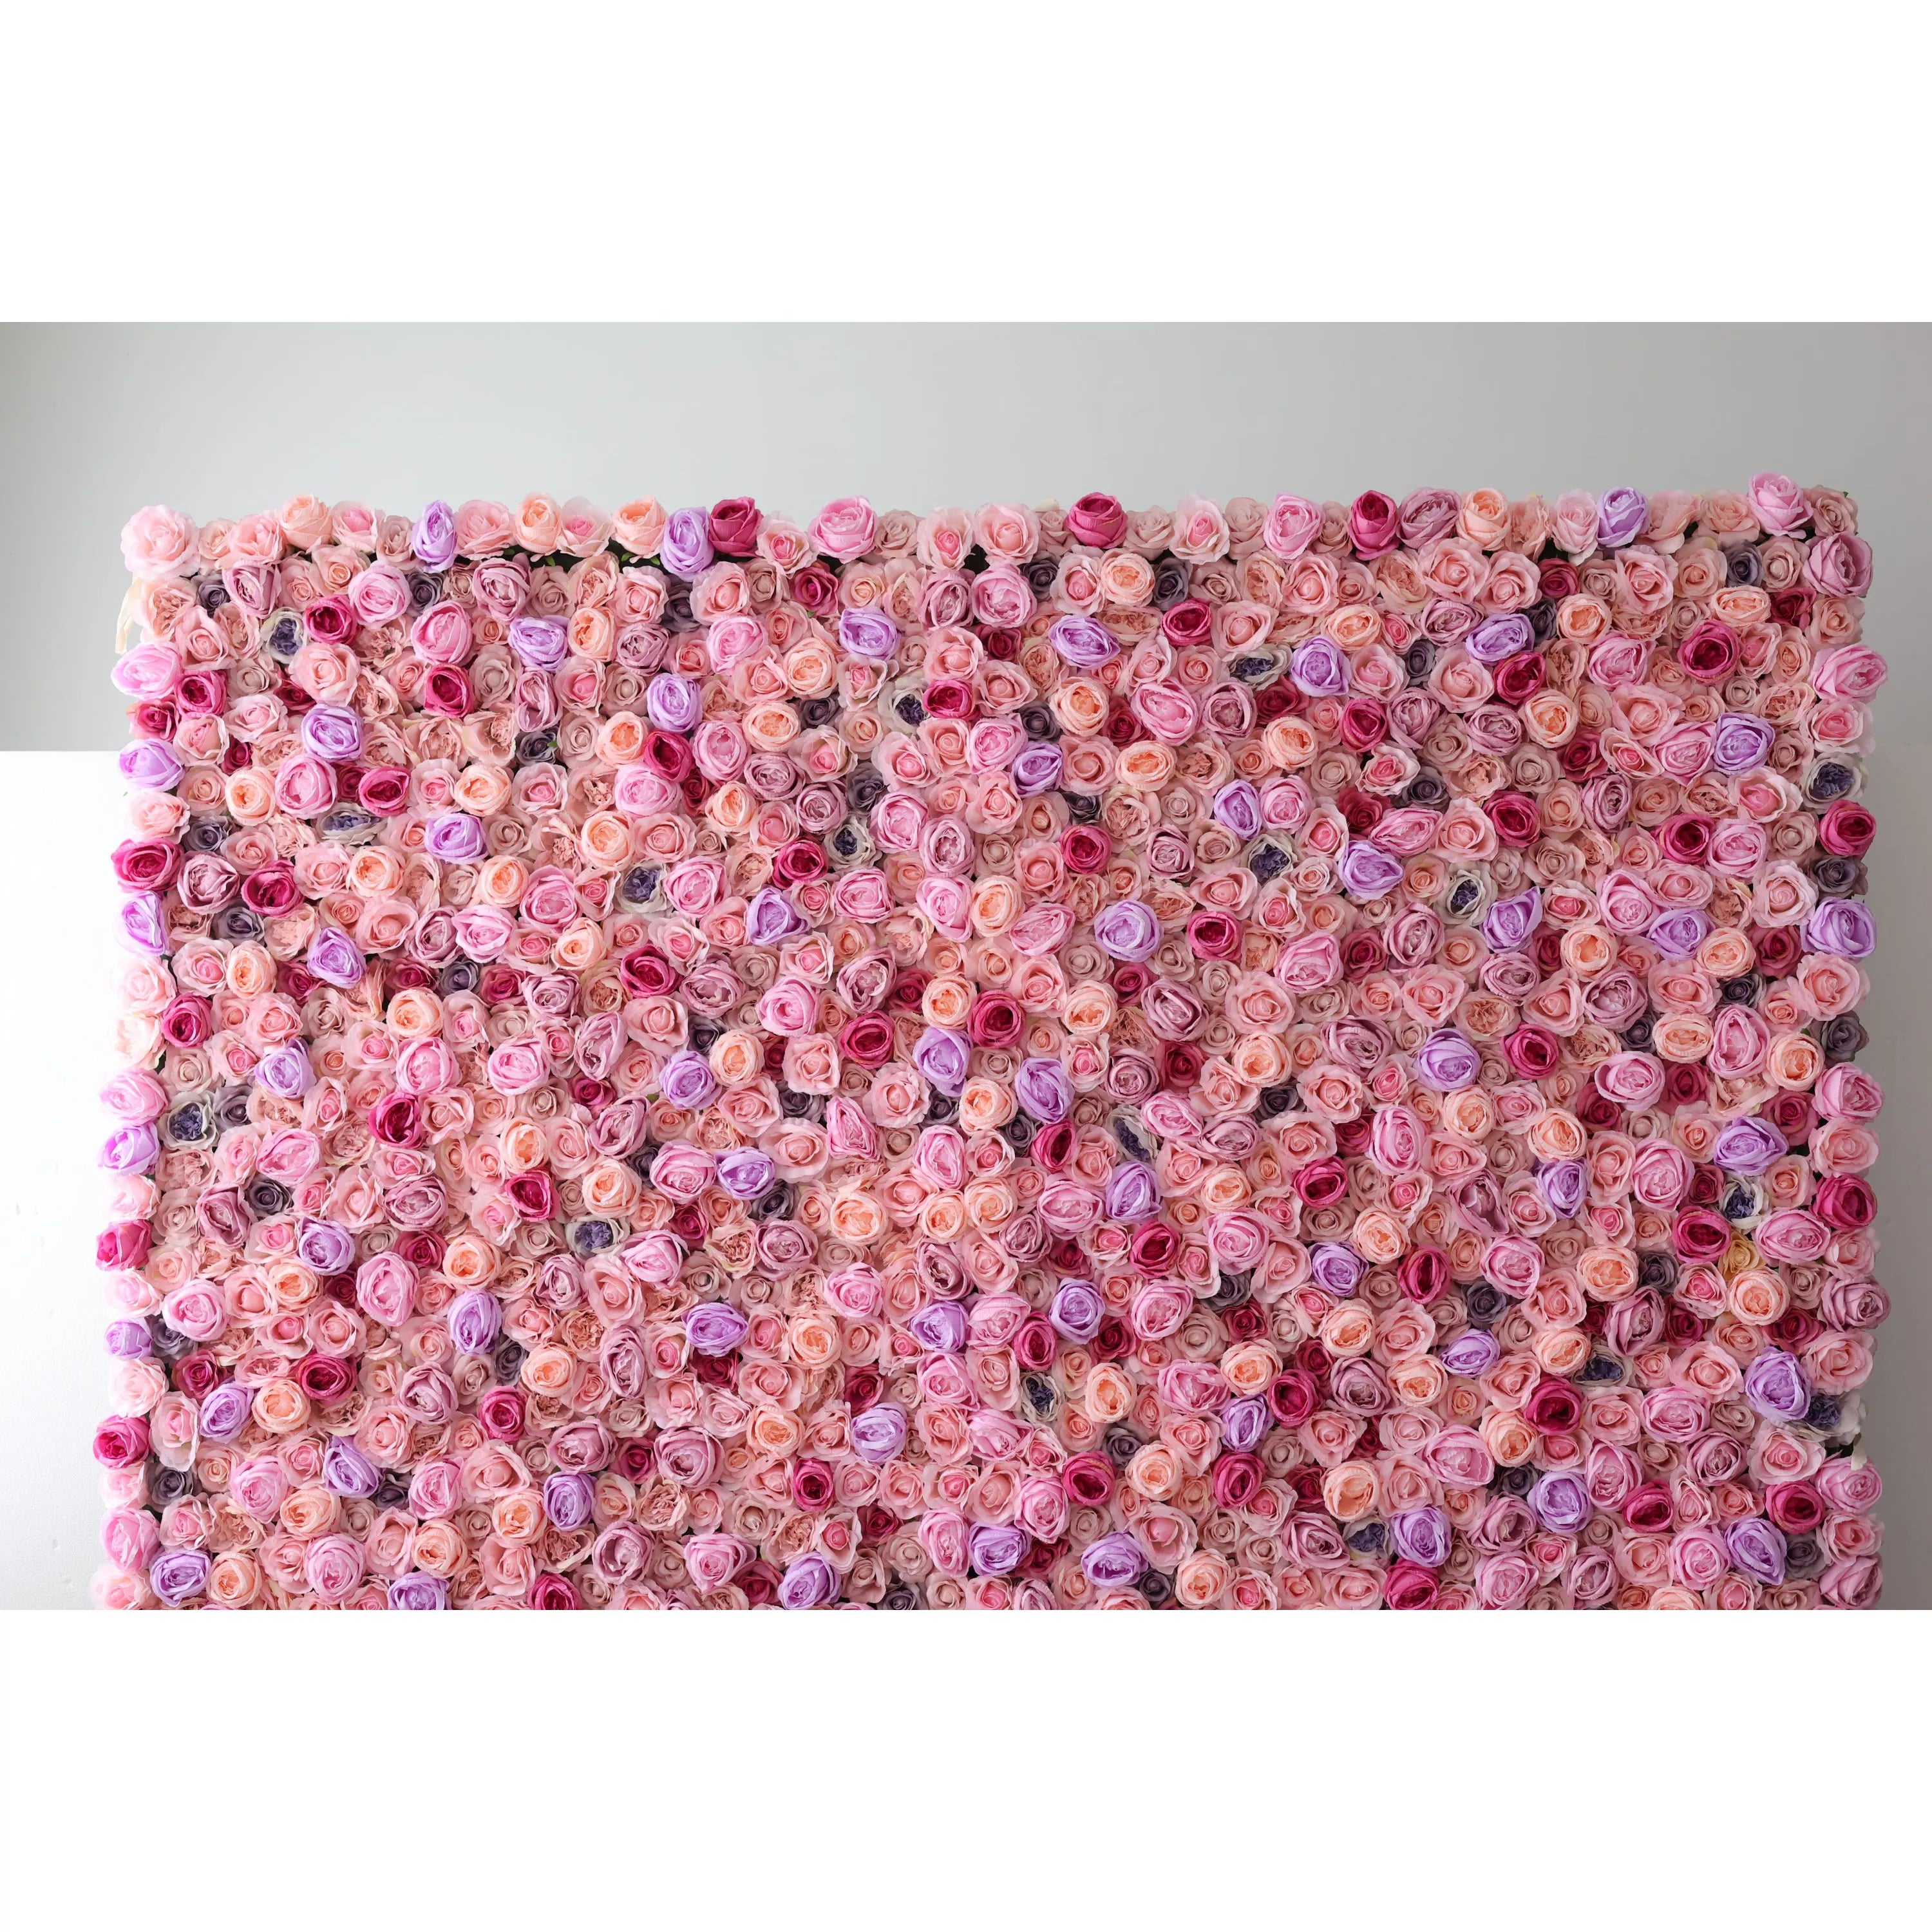 منتجع أزهار هادئ: احتضان الهدوء مع زهور الفالار-بانوراما وردية للمناسبات والسبا